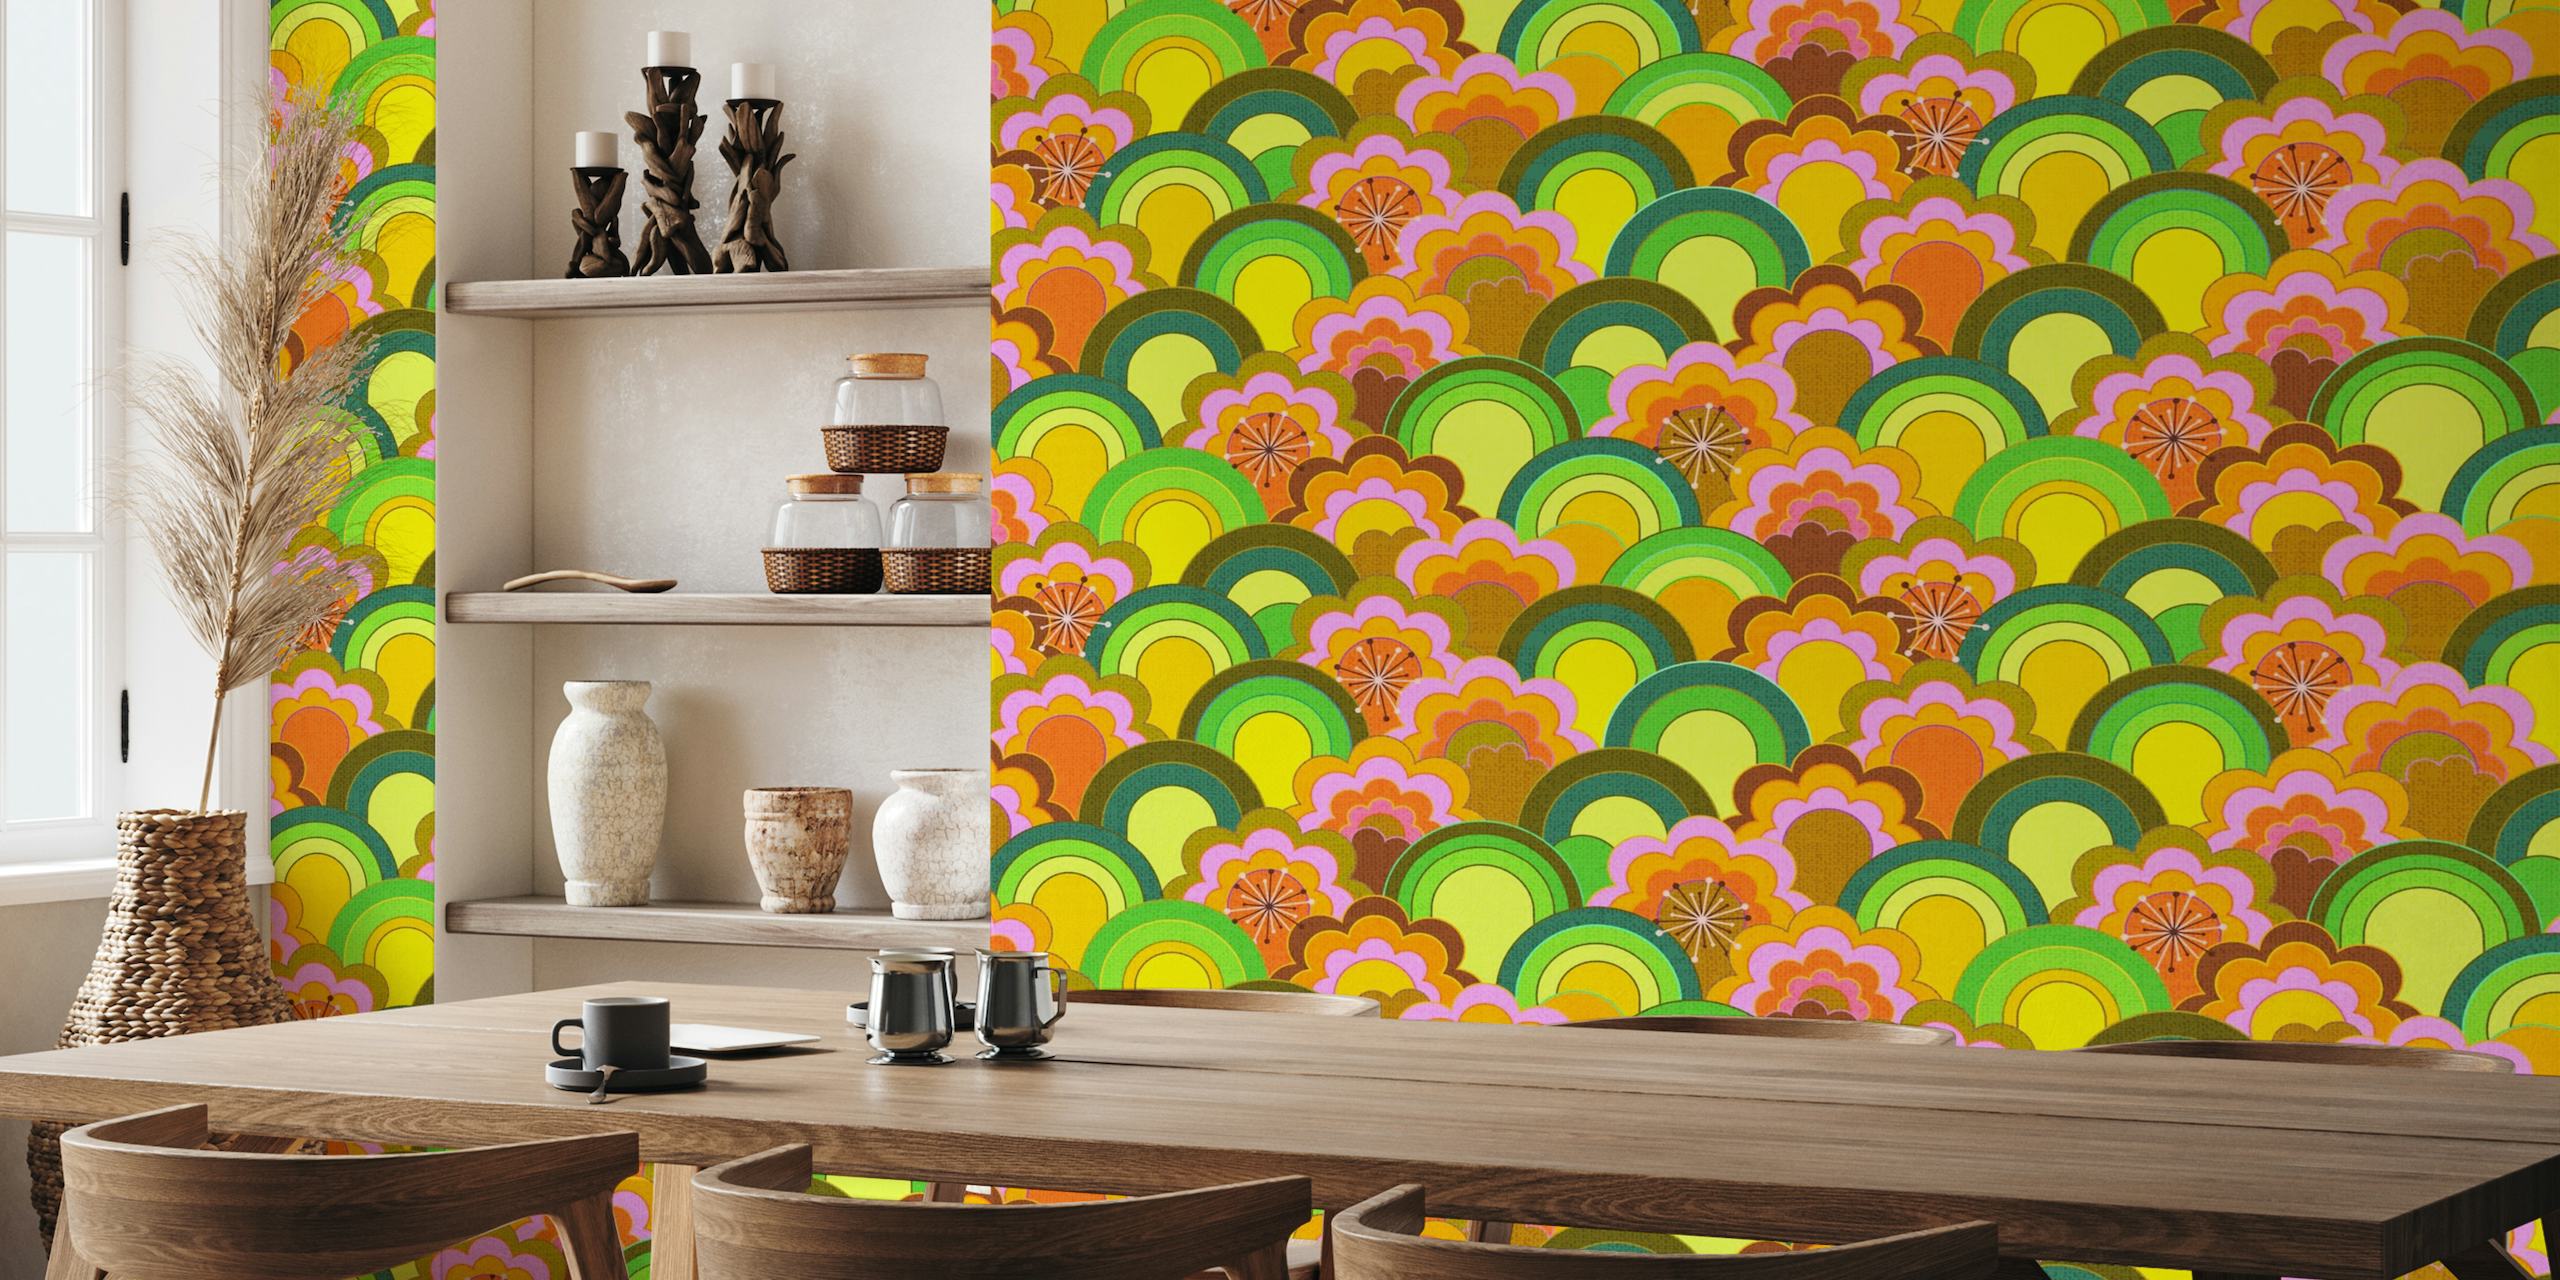 Farverigt 70'er-inspireret vægmaleri med regnbueblomster med et tekstureret udseende